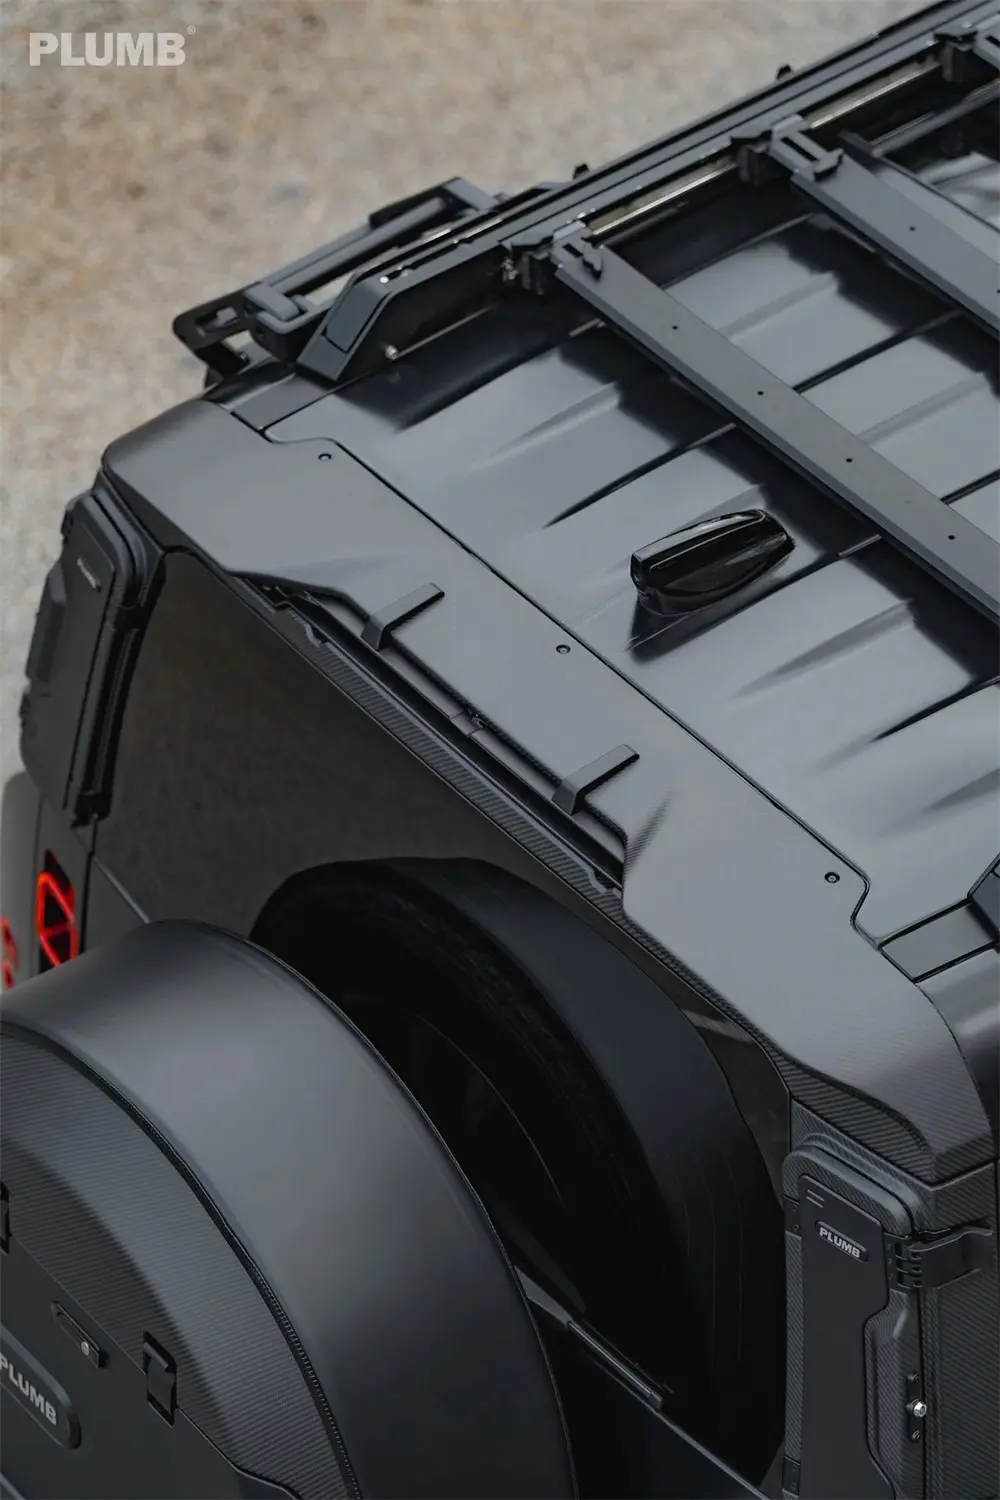 Kit spoiler posteriore PLUMB per Land Rover Defender Factory